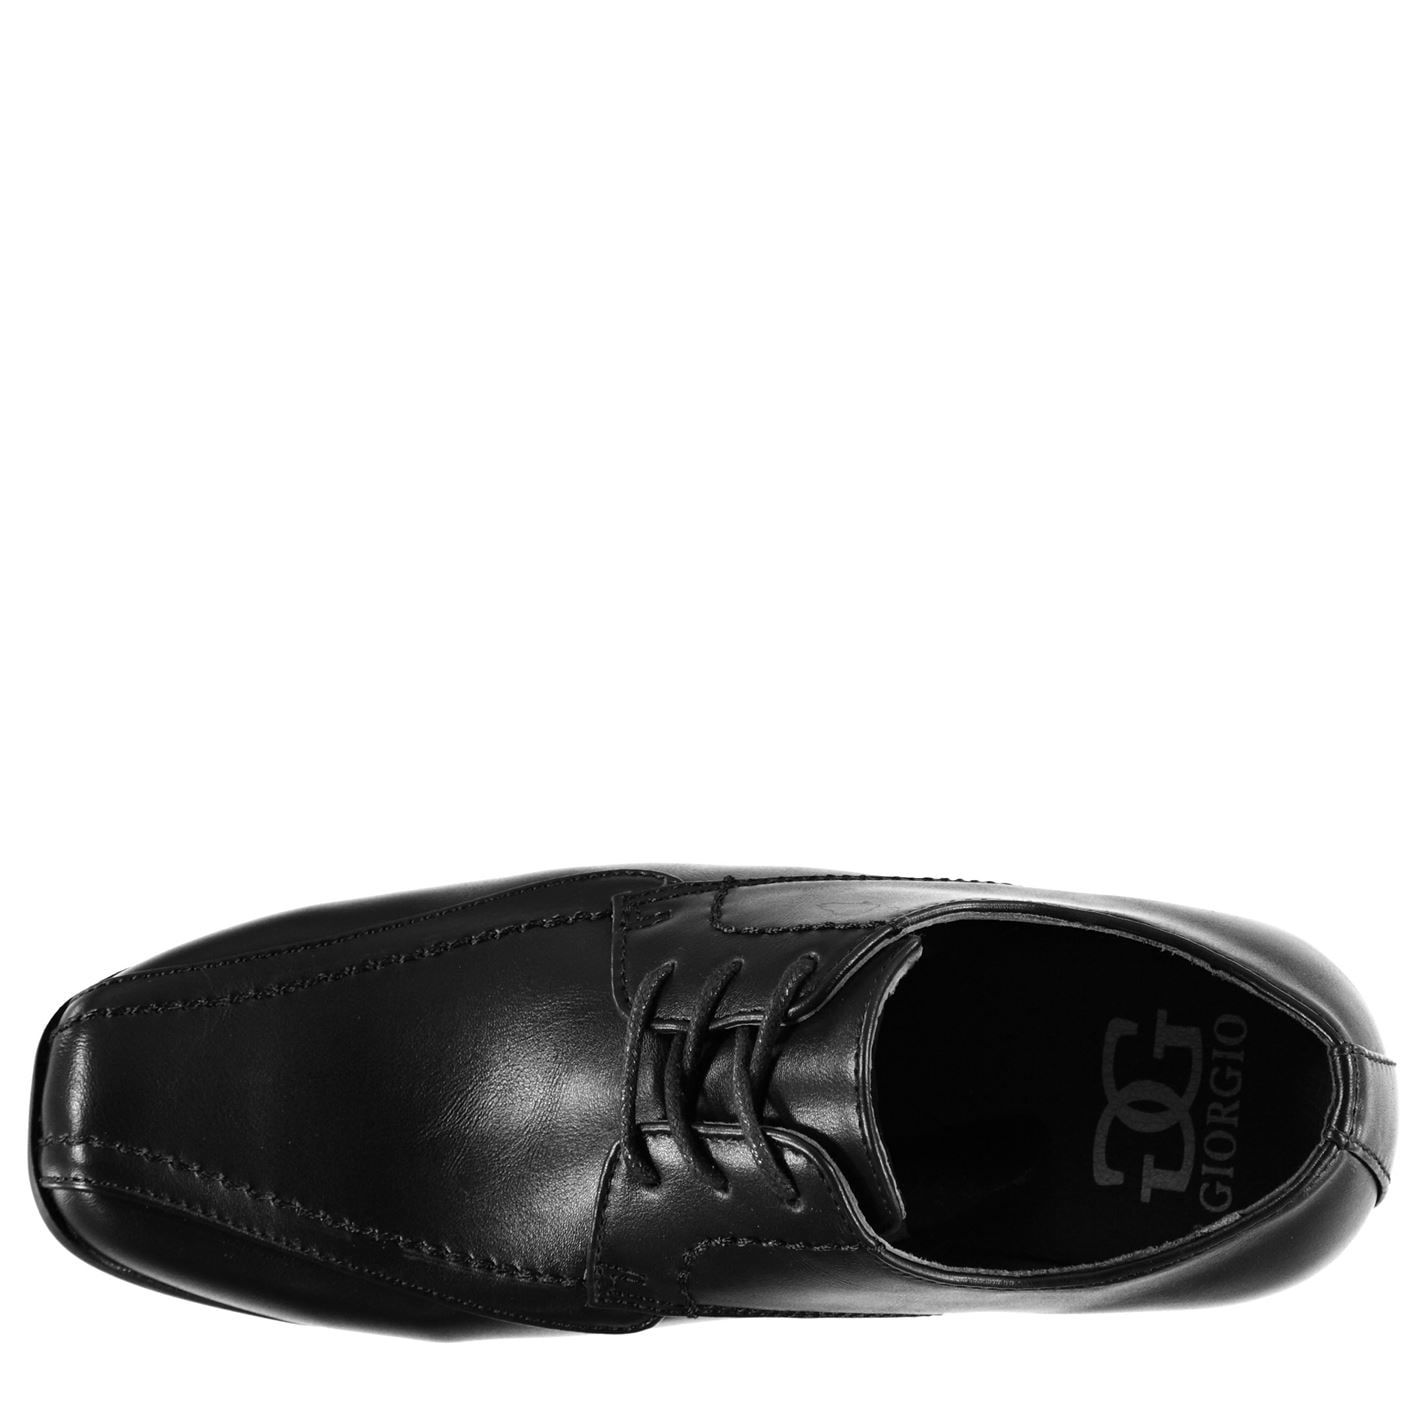 Giorgio Kids Bourne Junior Boys Shoes Classic Design Smart Lace Up Slight Heel